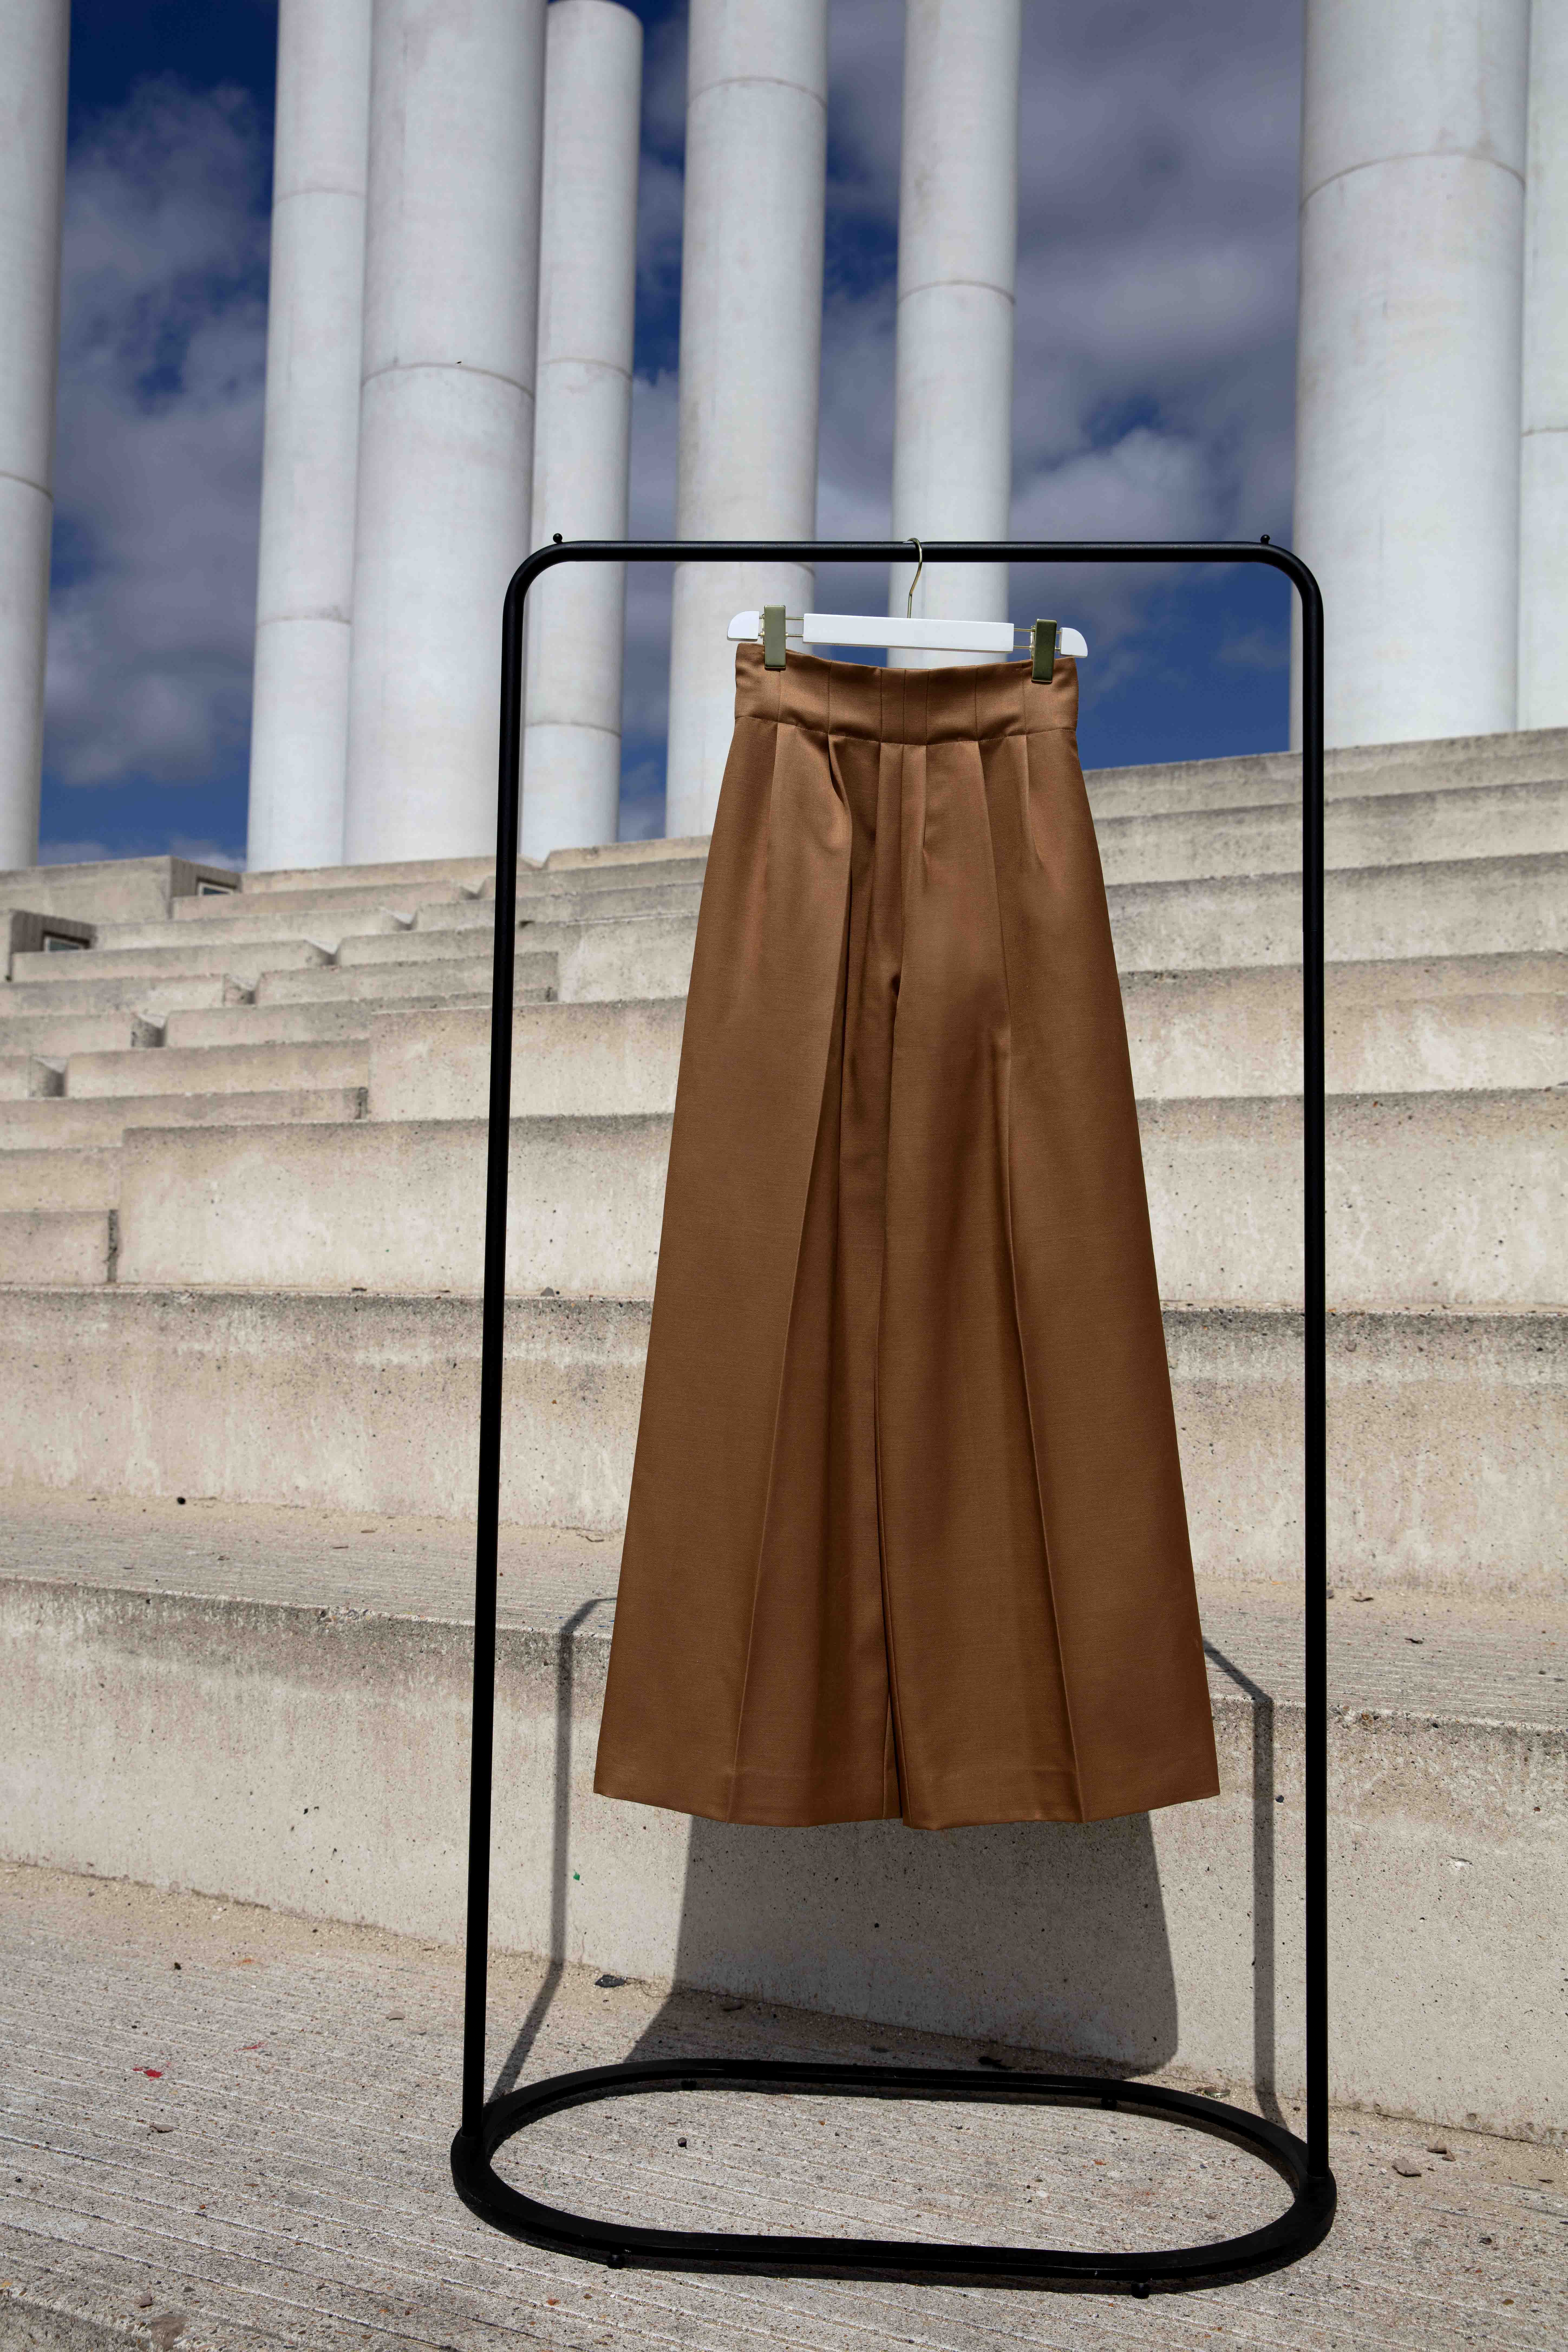 Découvrez Elisa, notre magnifique pantalon bronze plissé à la taille, imaginé et conçu par les deux designers Michele Emanuele et Veronica Marucci au sein de leur atelier parisien.